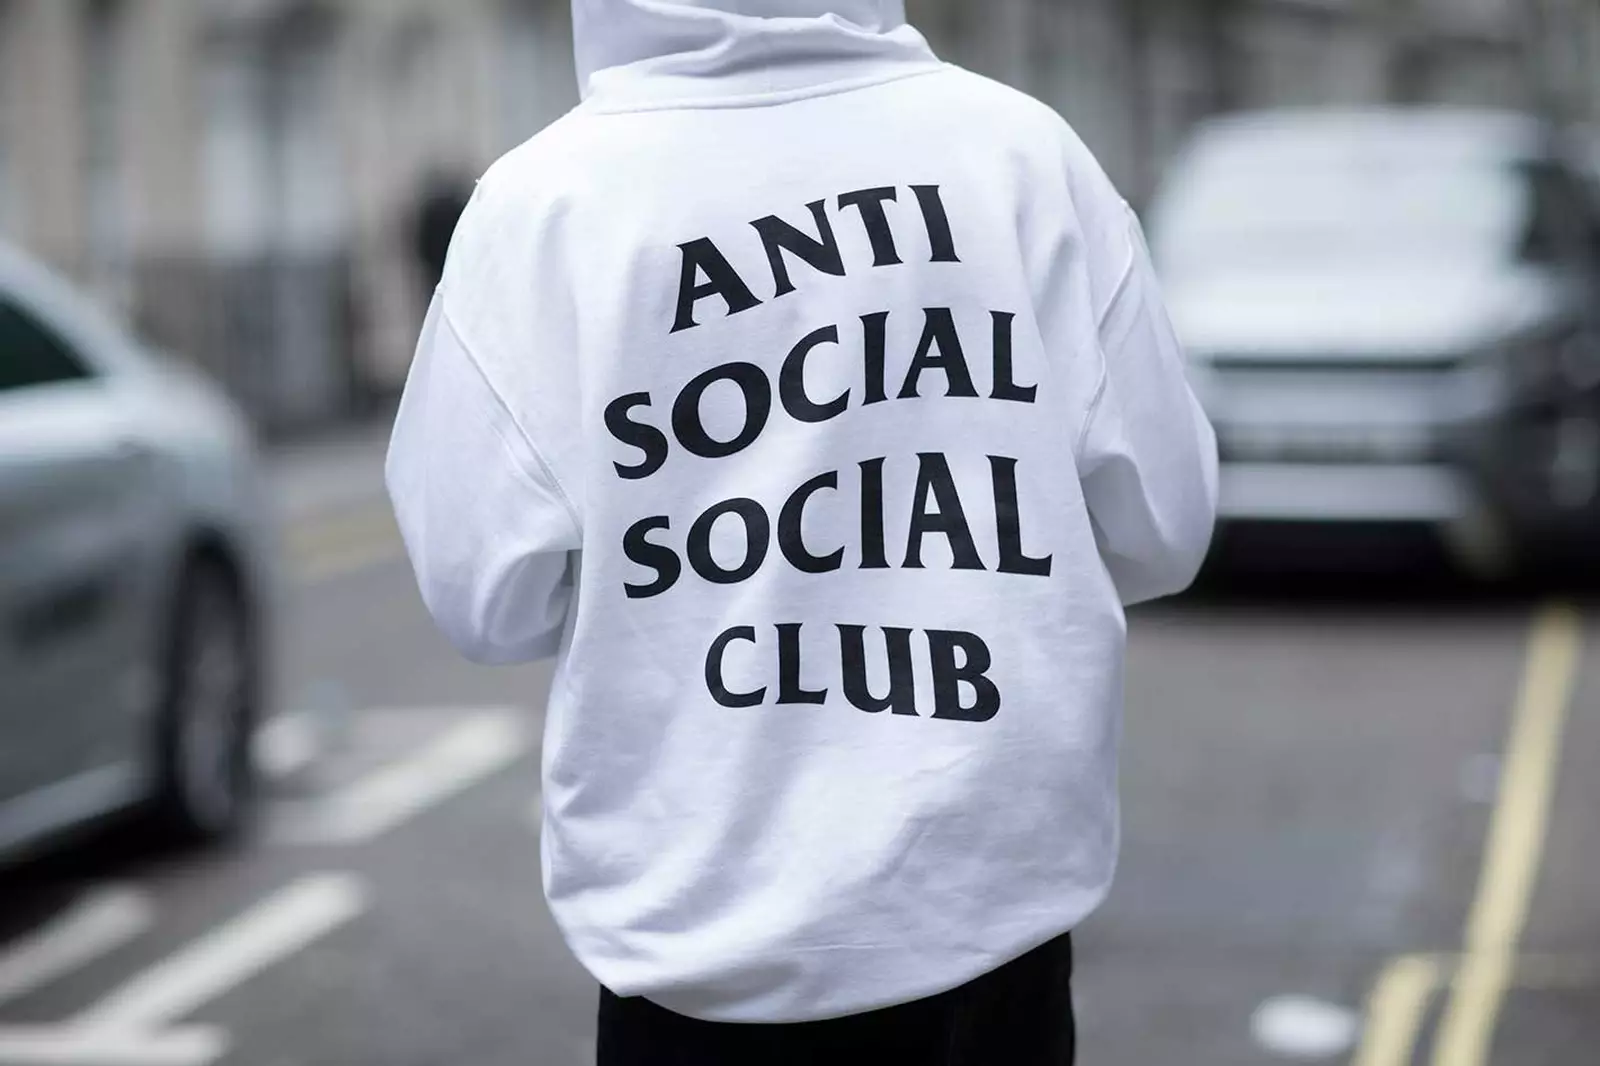 Tại Sao Anti Social Social Club Lại Được Gen Z Yêu Thích Đến Vậy?